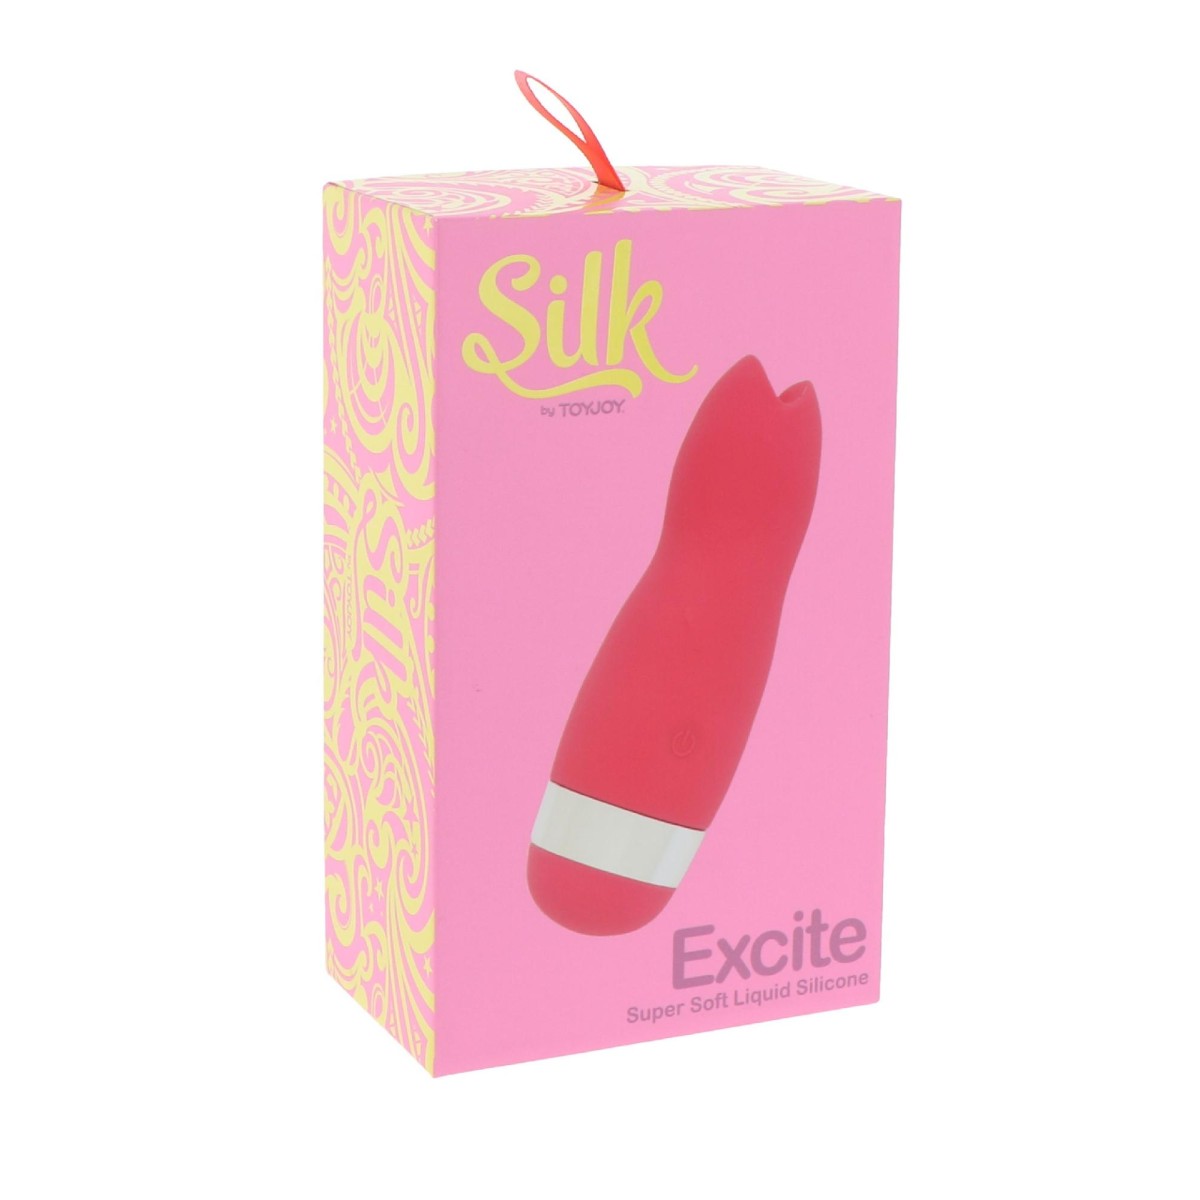 Stimolatore vaginale clitoride Excite Soft Silicone Clitoral